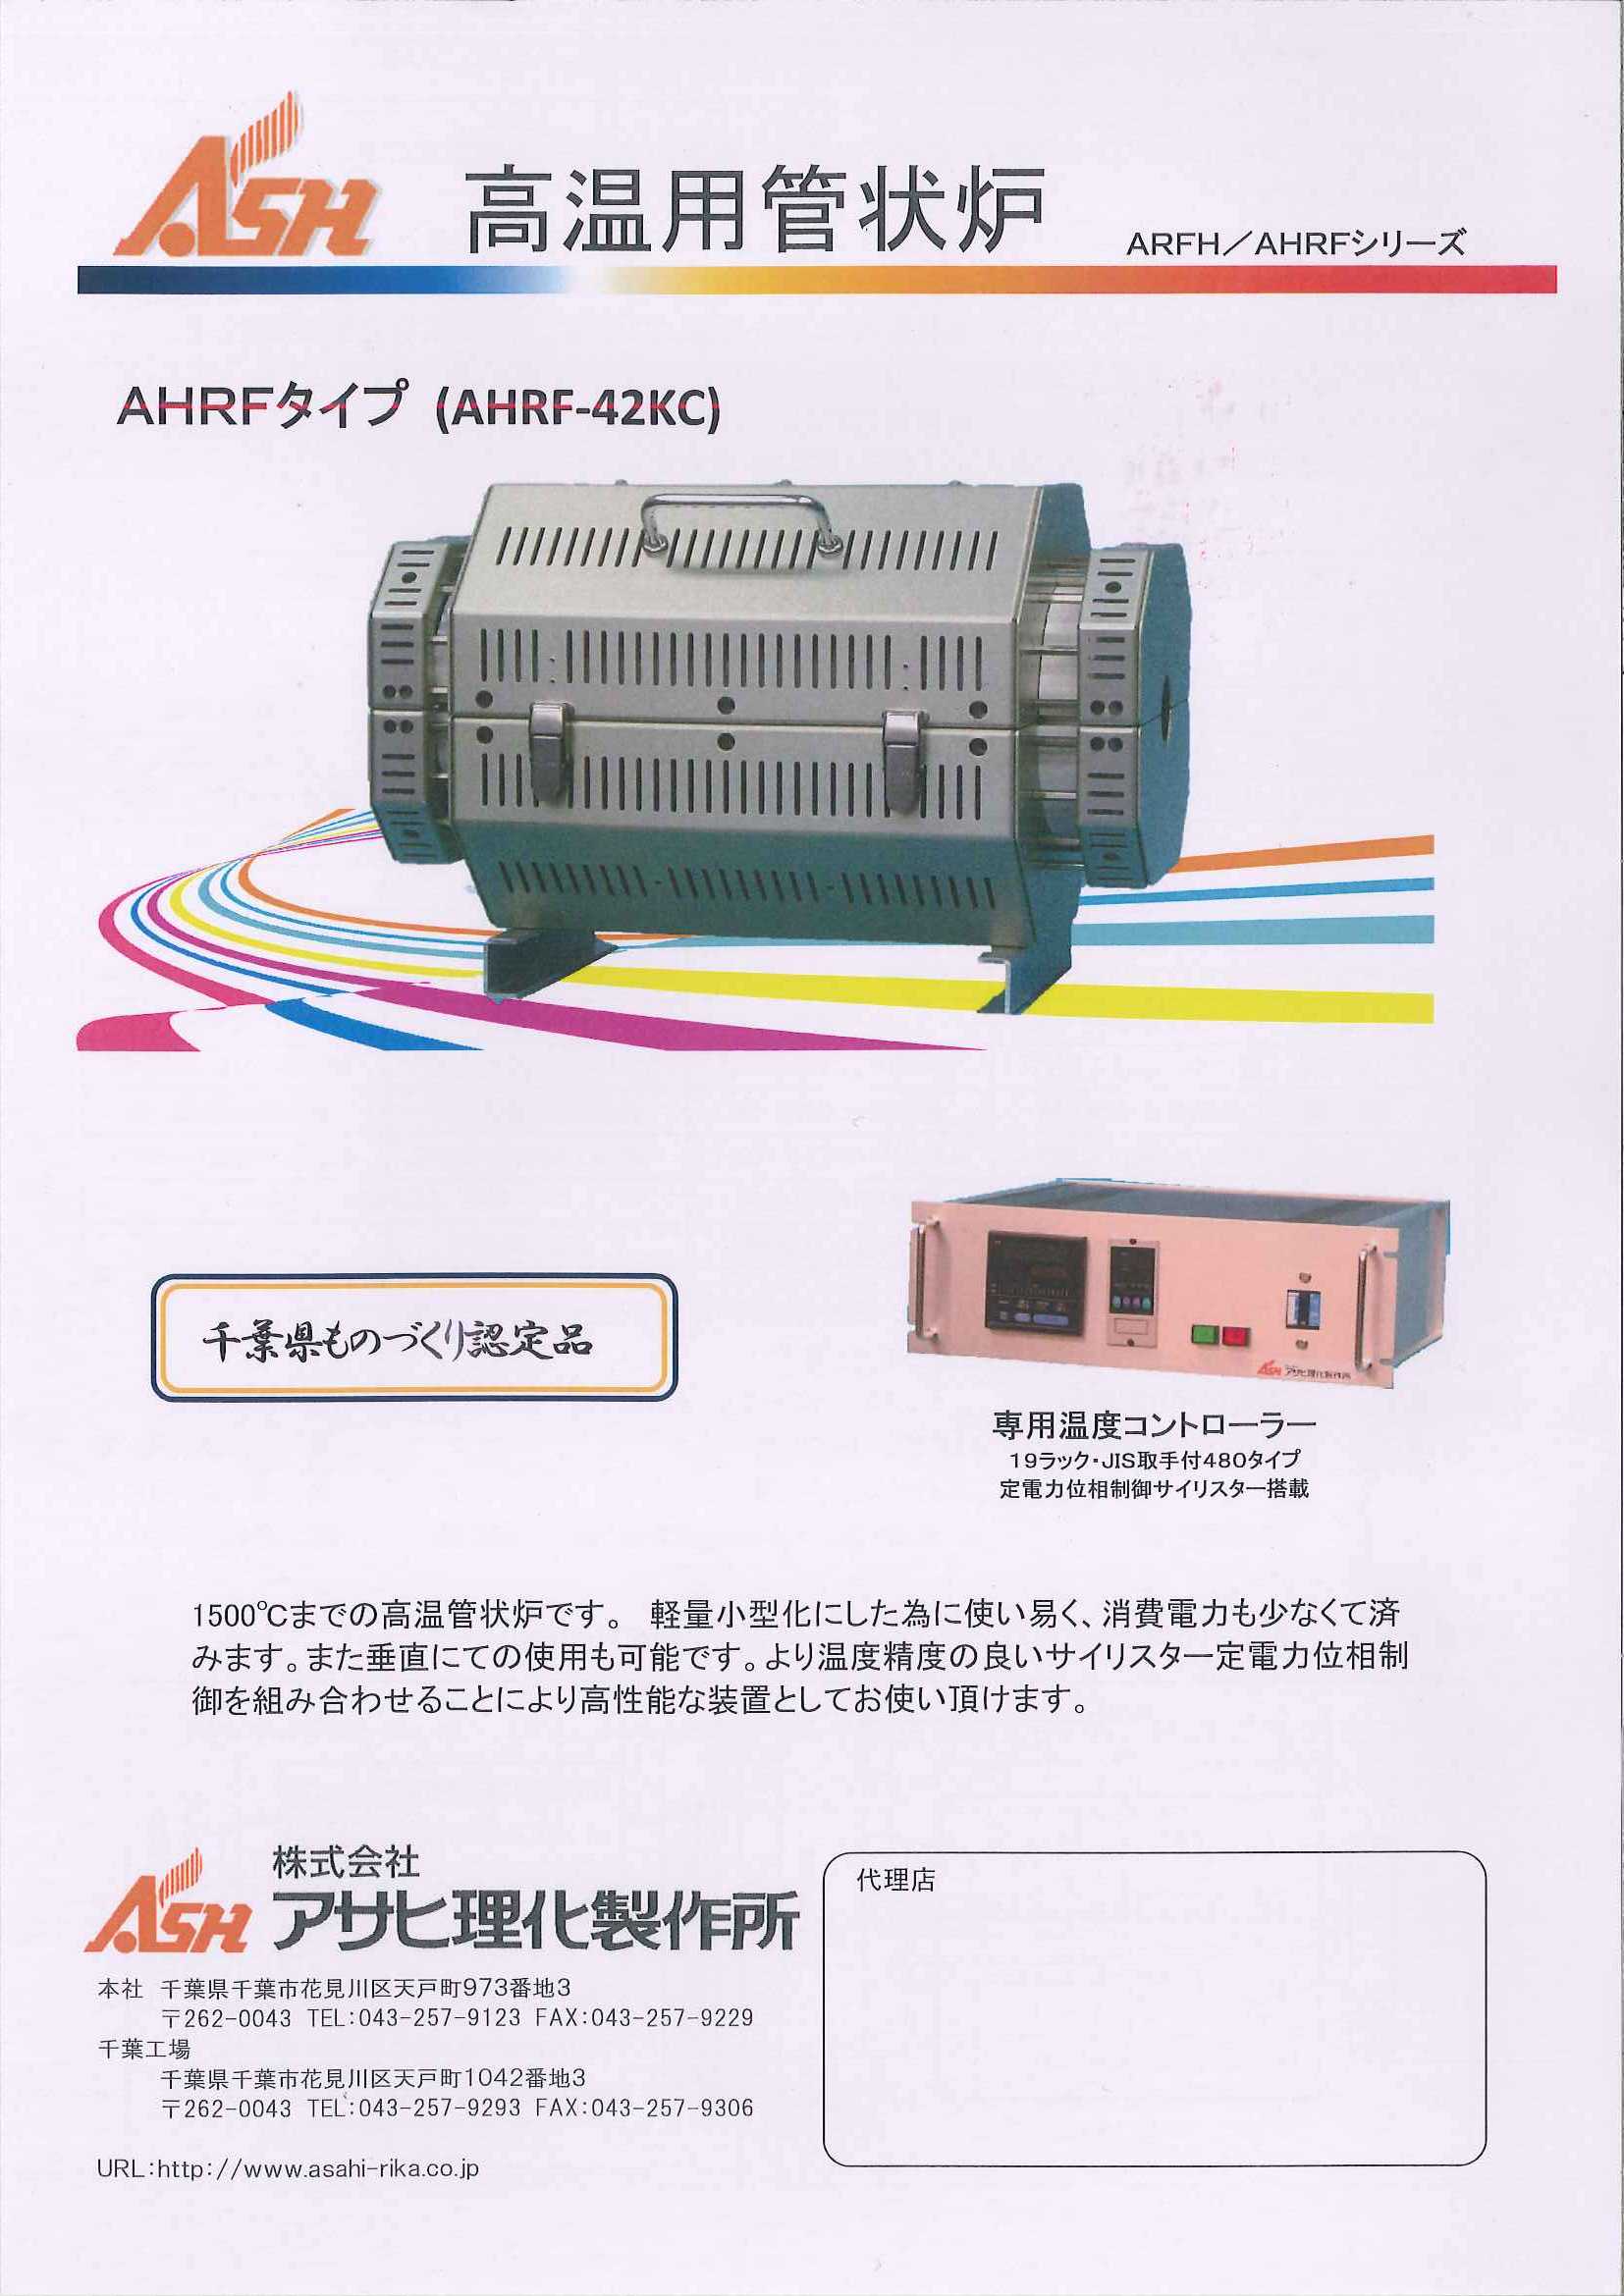 新色 アサヒ 管状炉 ARF-100KC 株 アサヒ理化製作所